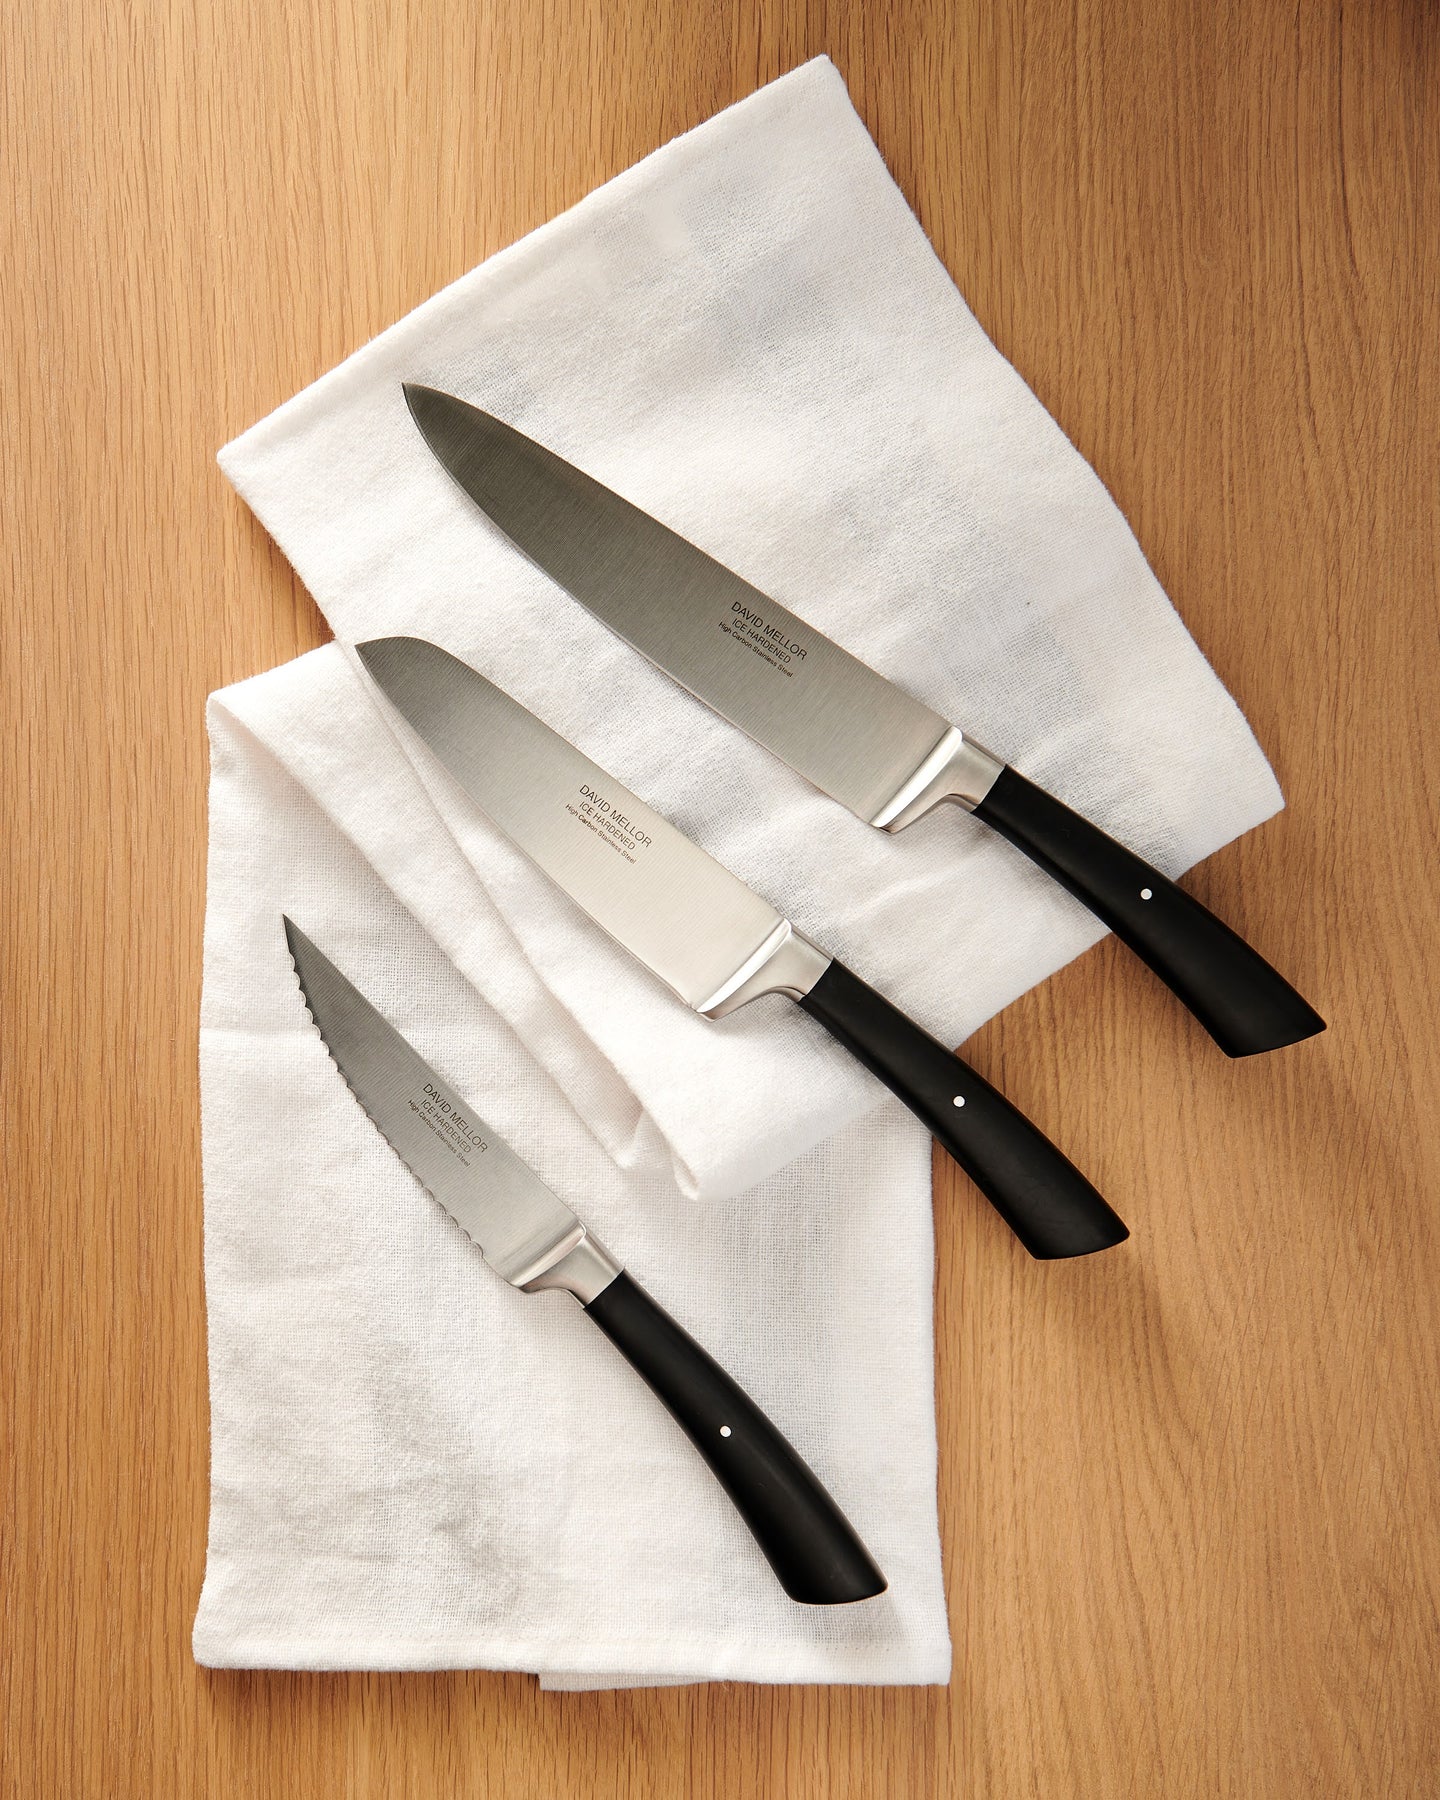 Knives - Shop Modern Elegant Kitchen Tools & More